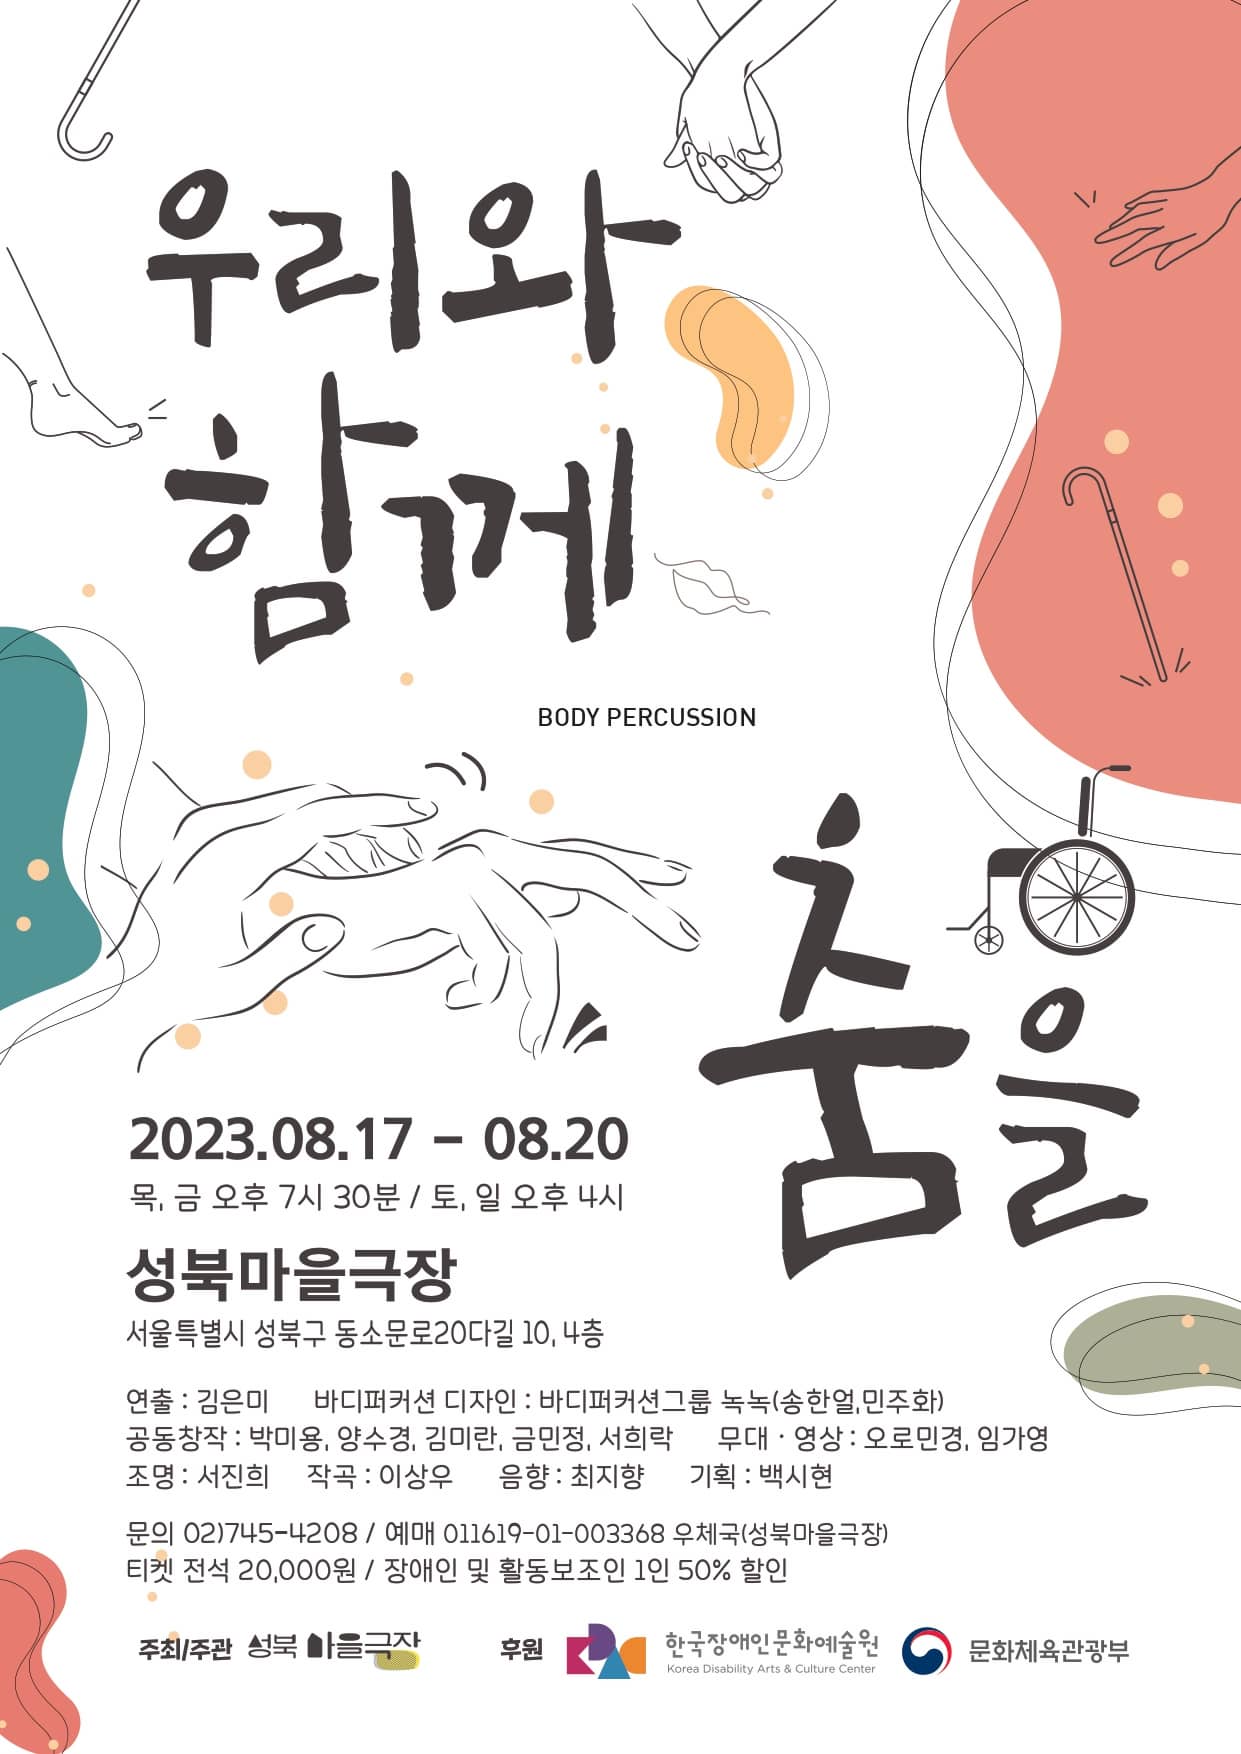 장애인 창작 몸 리듬 음악극 <우리와 함께 춤을>
2023년 8월 17일부터 20일까지 성북마을극장에서 진행됩니다.